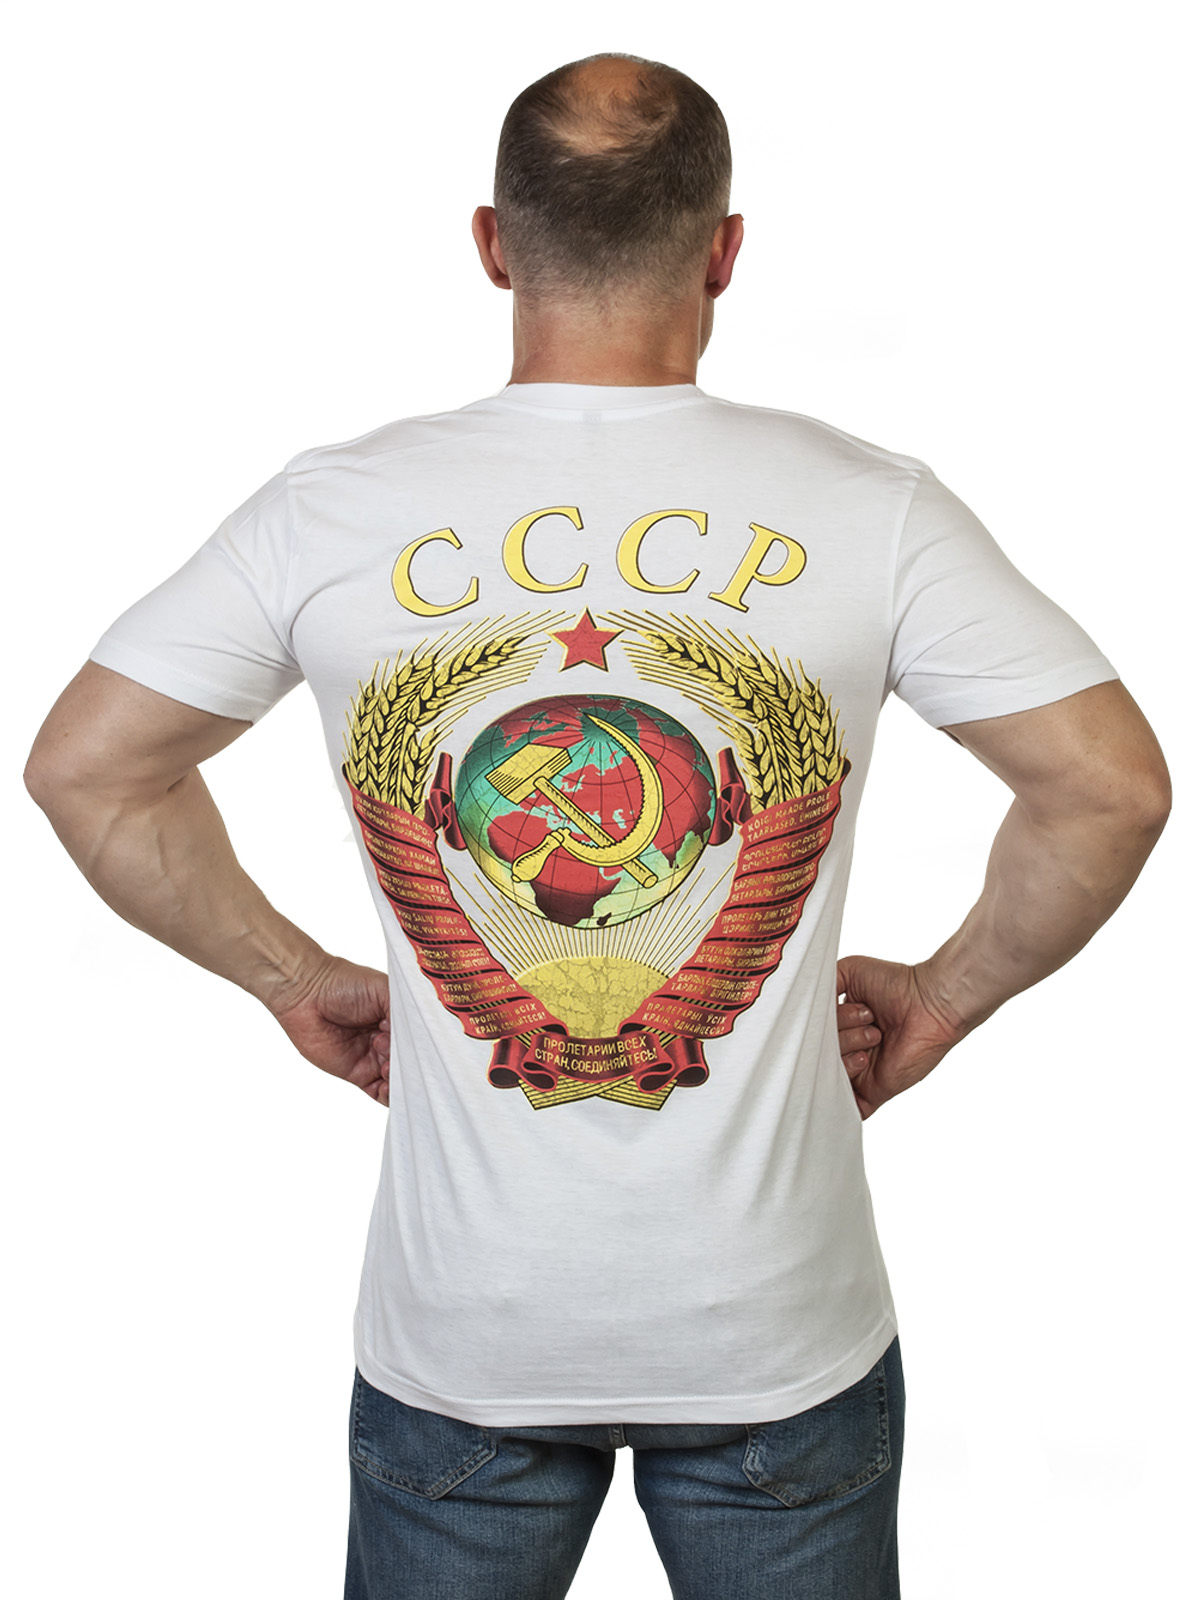 Спешите недорого купить футболку СССР с гербом Великой Державы